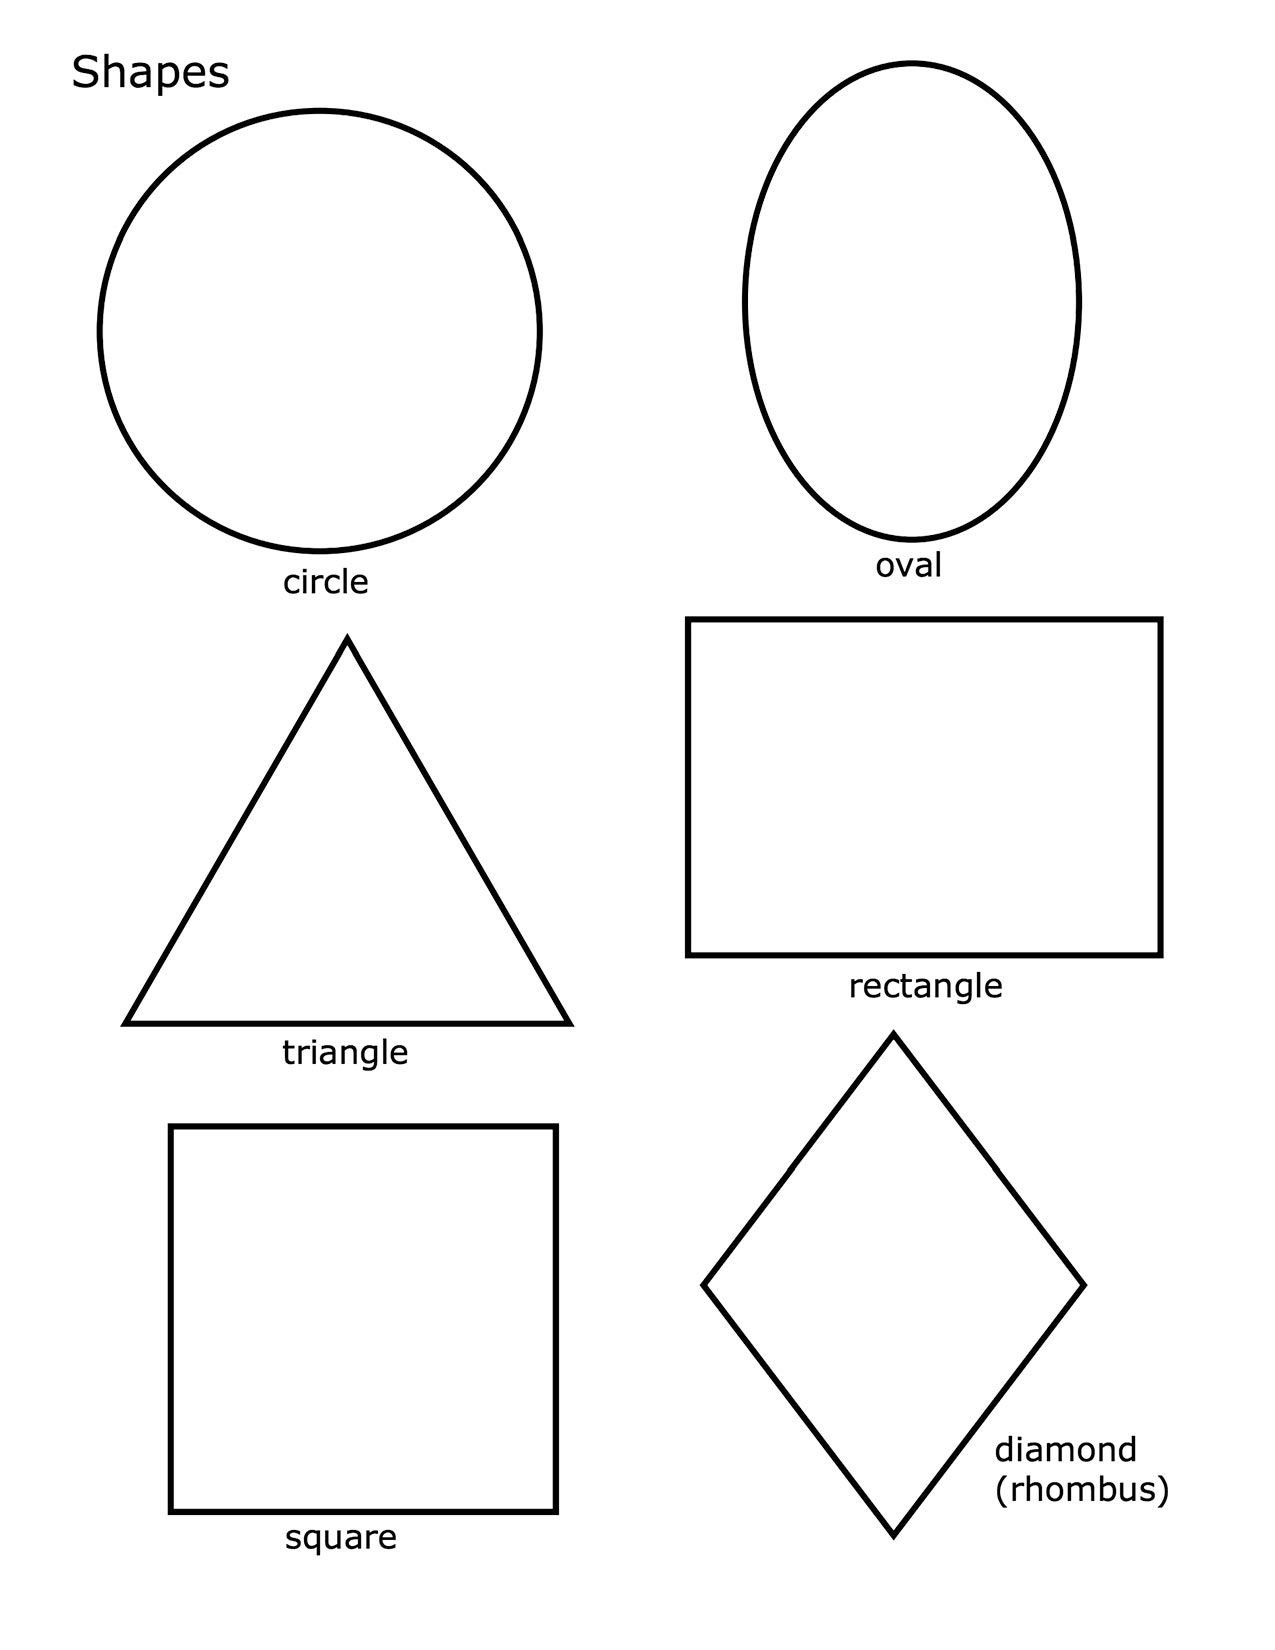 Квадрат, треугольник, круг и сердце для вырезания